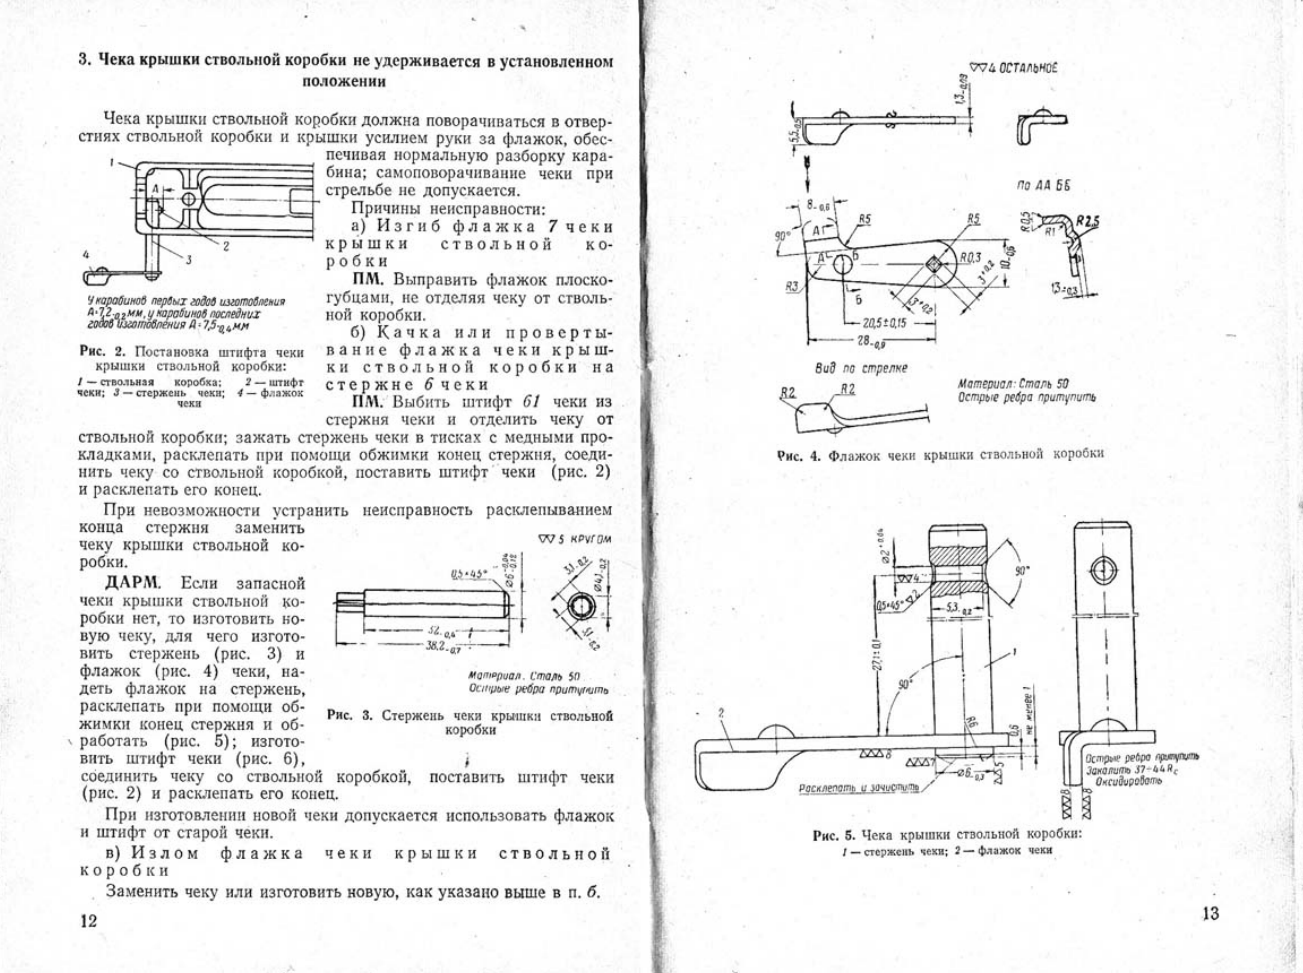 7,62-мм СКС. Руководство по ремонту 7,62-мм самозарядного карабина Симонова . Издание 2. 1958